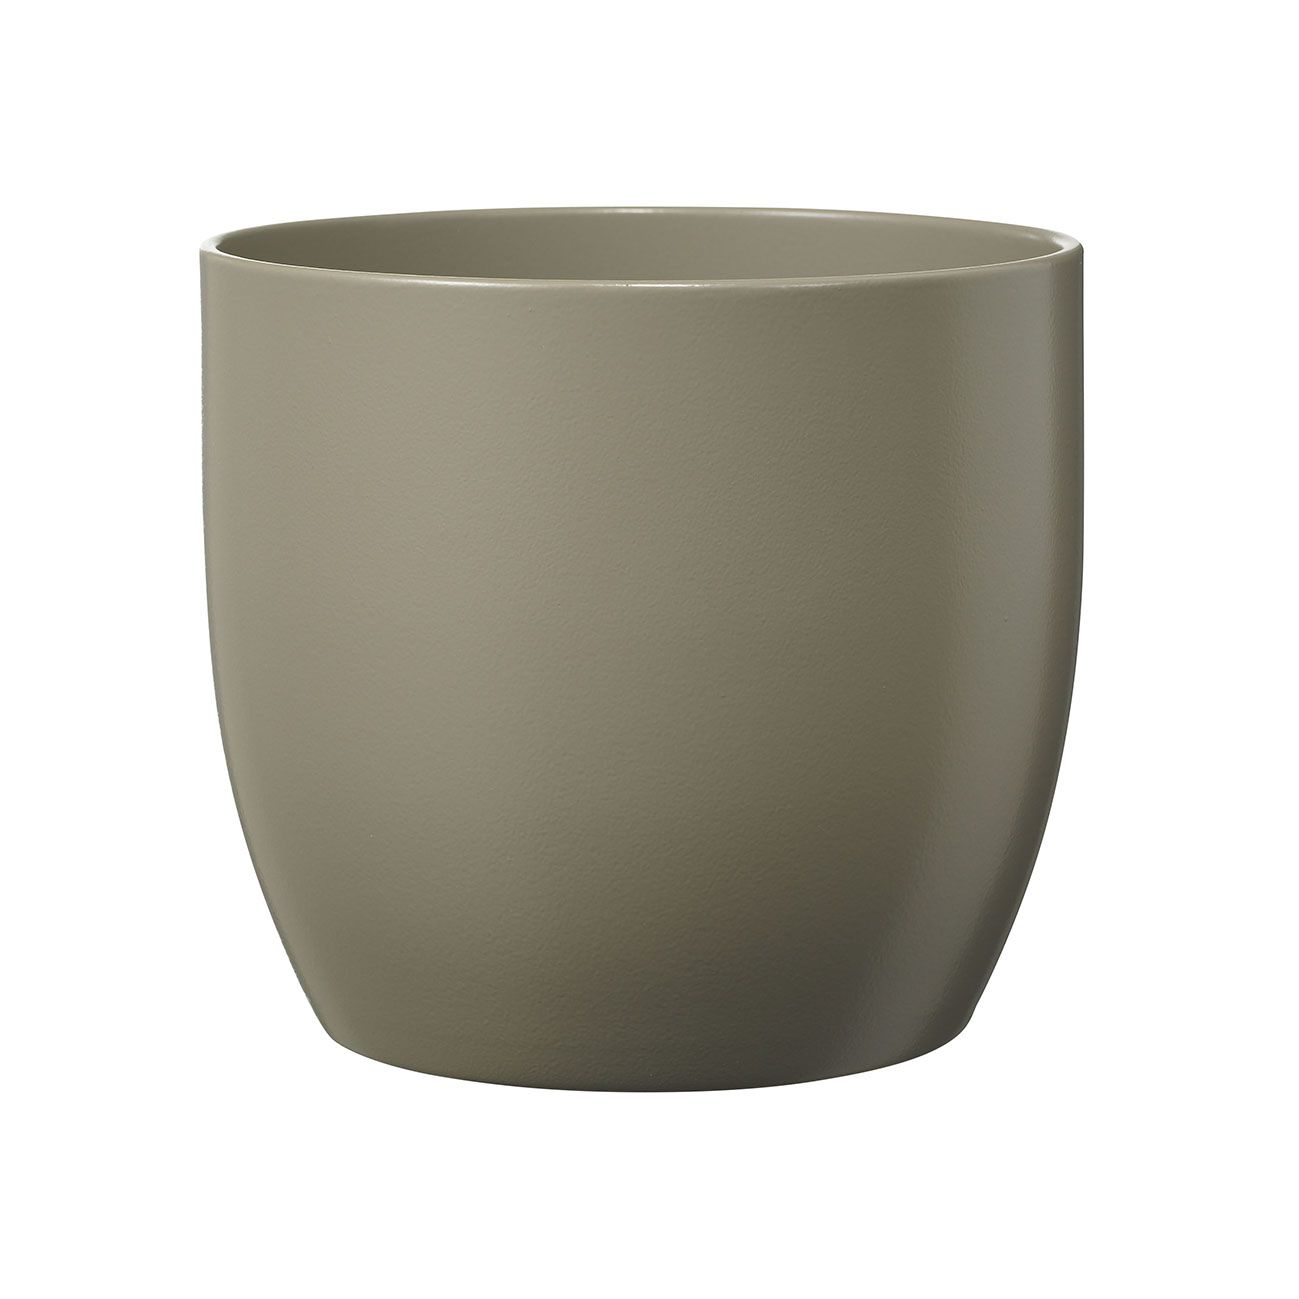 Ghiveci SK Basel, ceramica, gri mat, diametru 16 cm, 15.5 cm 15.5